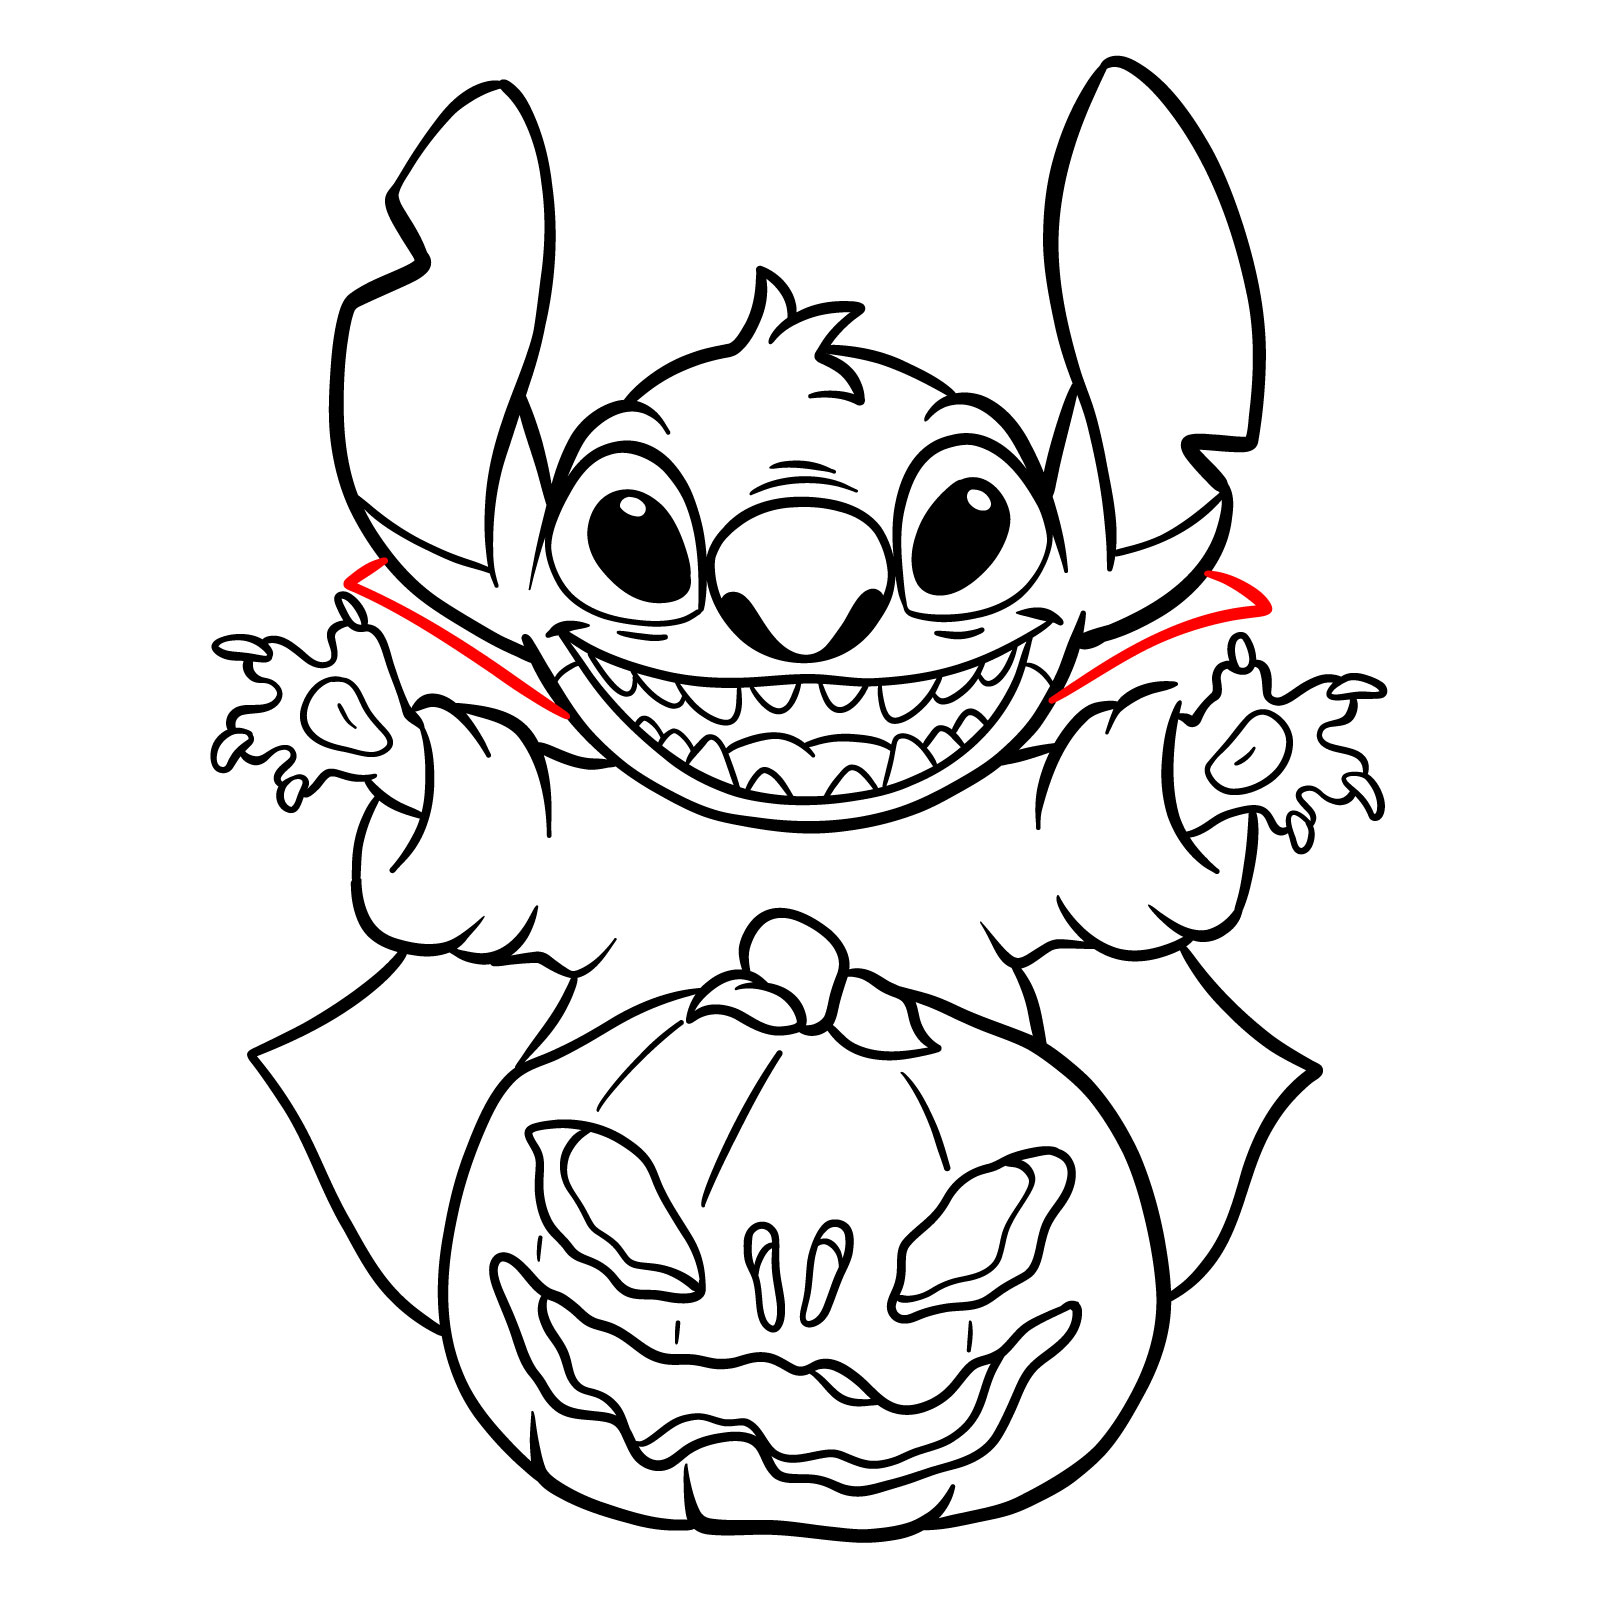 How to Draw Halloween Stitch with a jack-o'-lantern - step 30